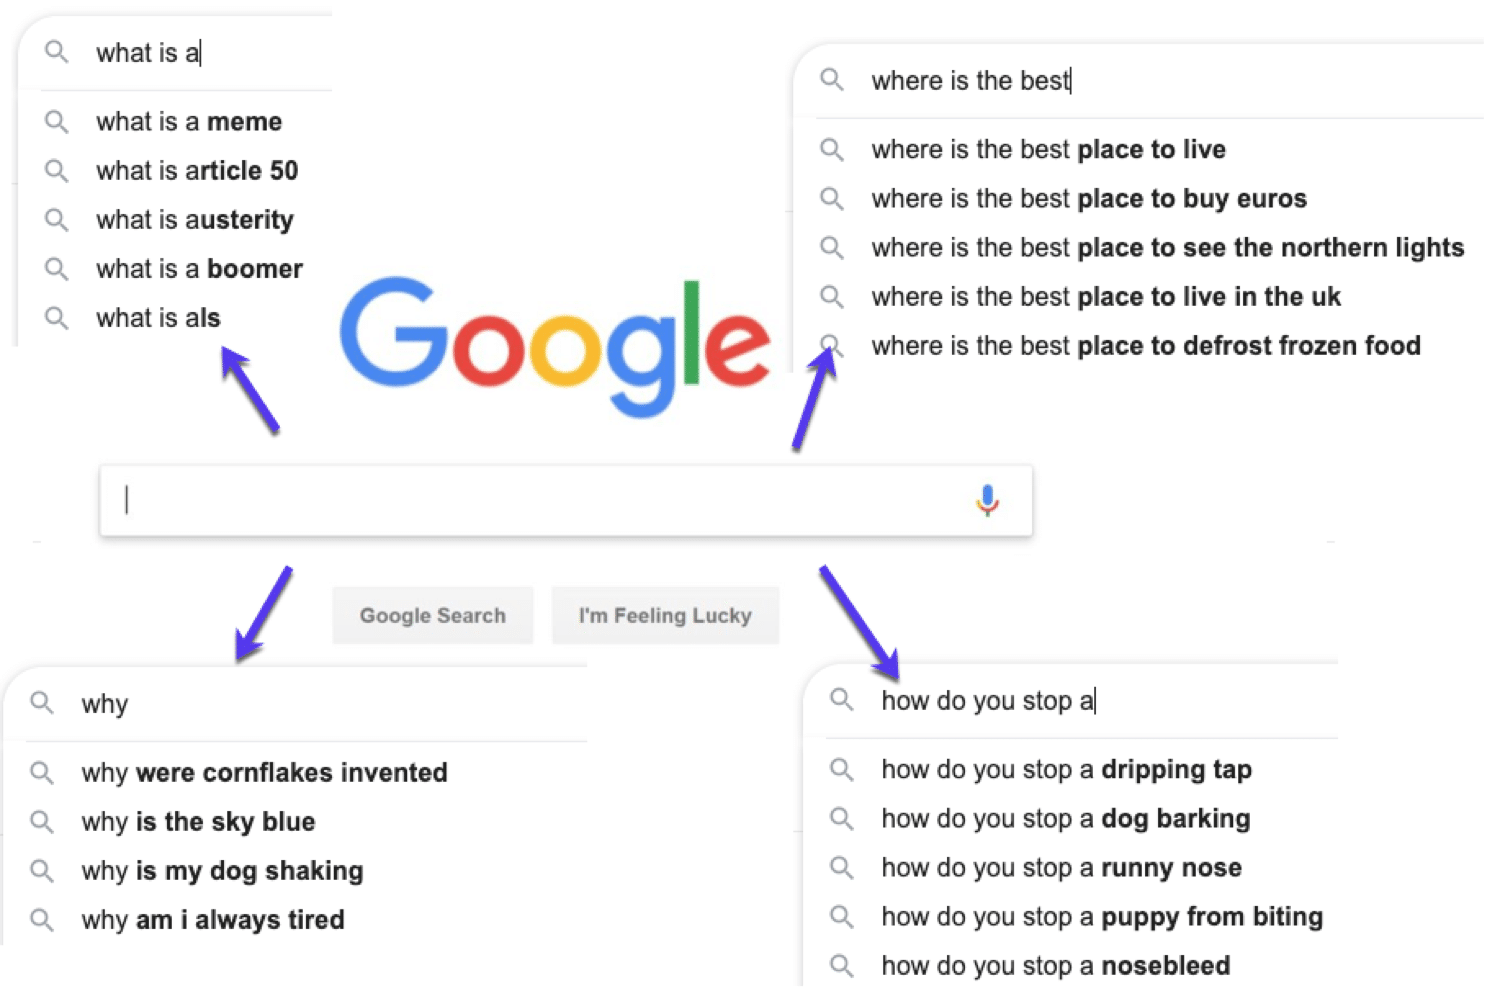 Esempi di domande che la gente cerca su Google